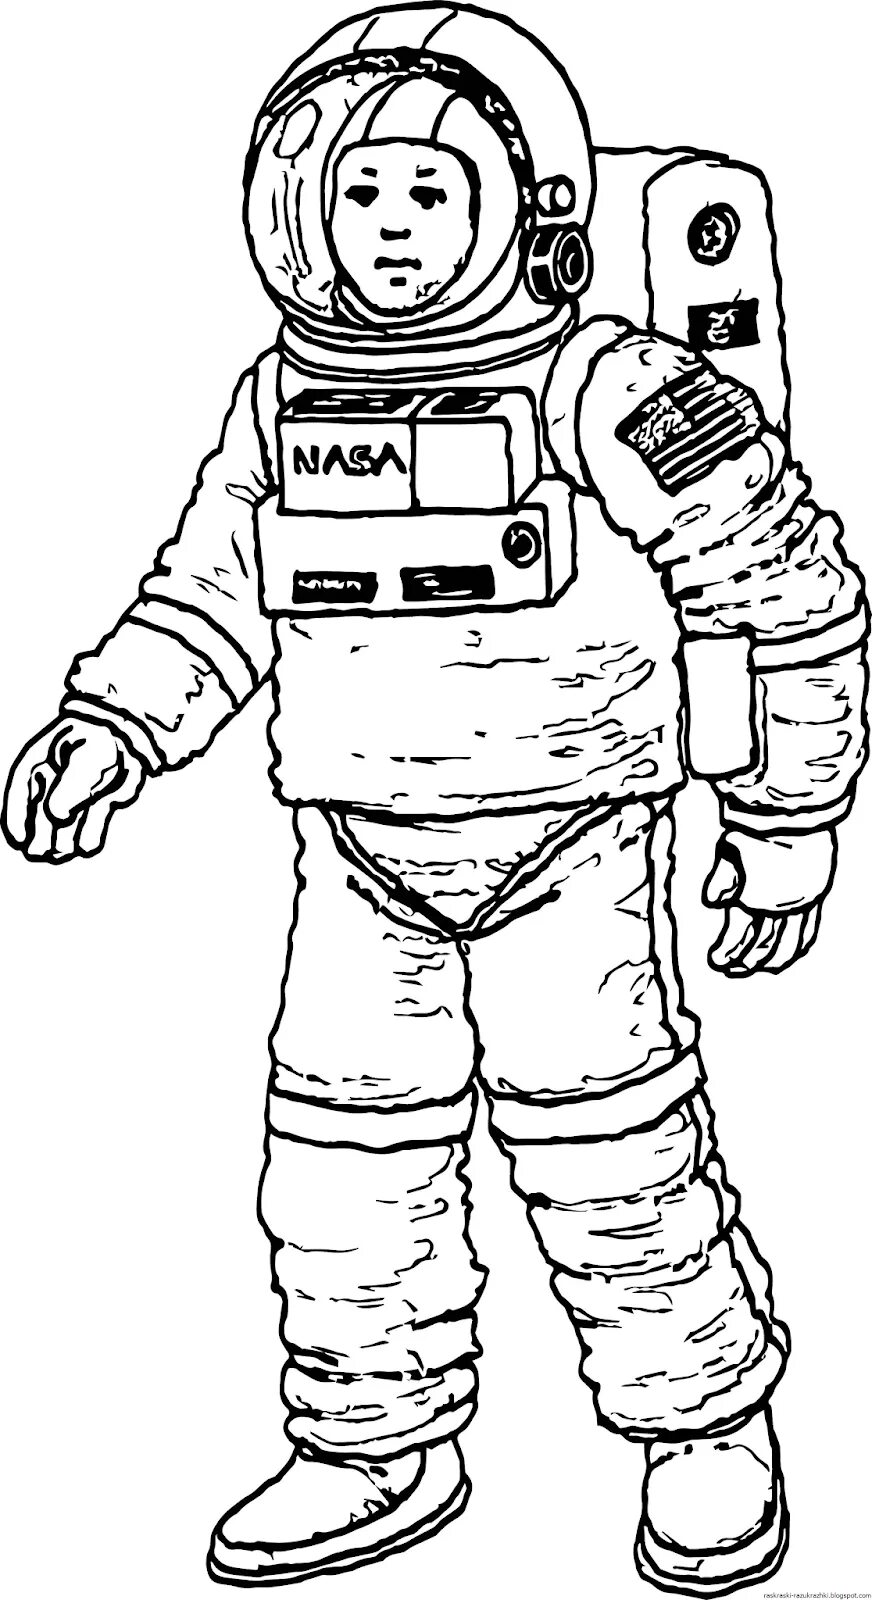 Как нарисовать скафандр. Космонавт раскраска для детей. Раскраска про космос и Космонавтов для детей. Космонавт рисунок. Рисунок Космонавта в скафандре для детей.